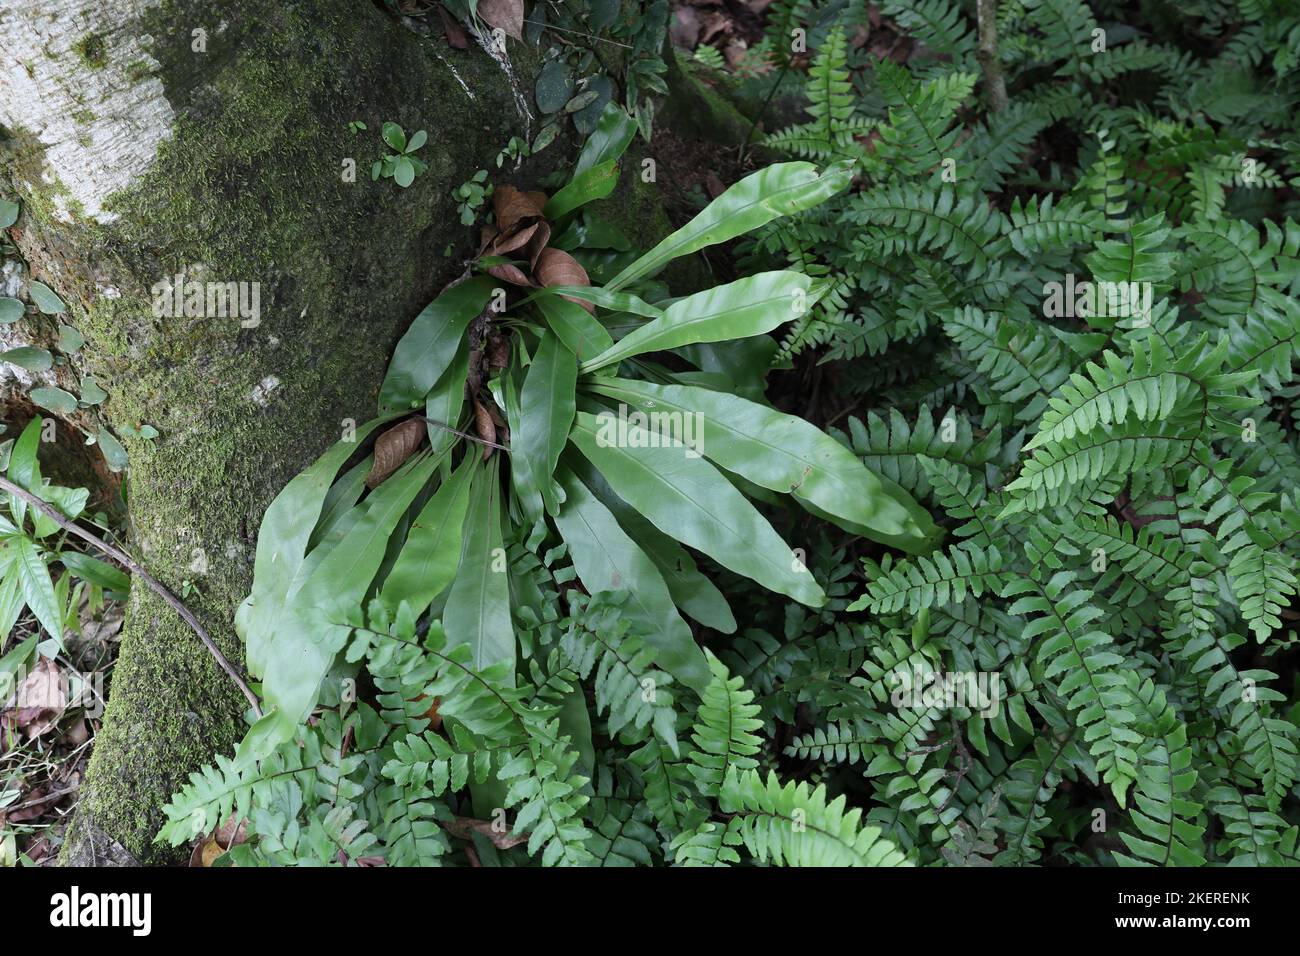 Vue en grand angle d'une plante de la fougère de nid d'oiseau de taille moyenne (Asplenium Nidus) et de petites plantes qui poussent à la surface d'un tronc d'arbre Jack. Banque D'Images